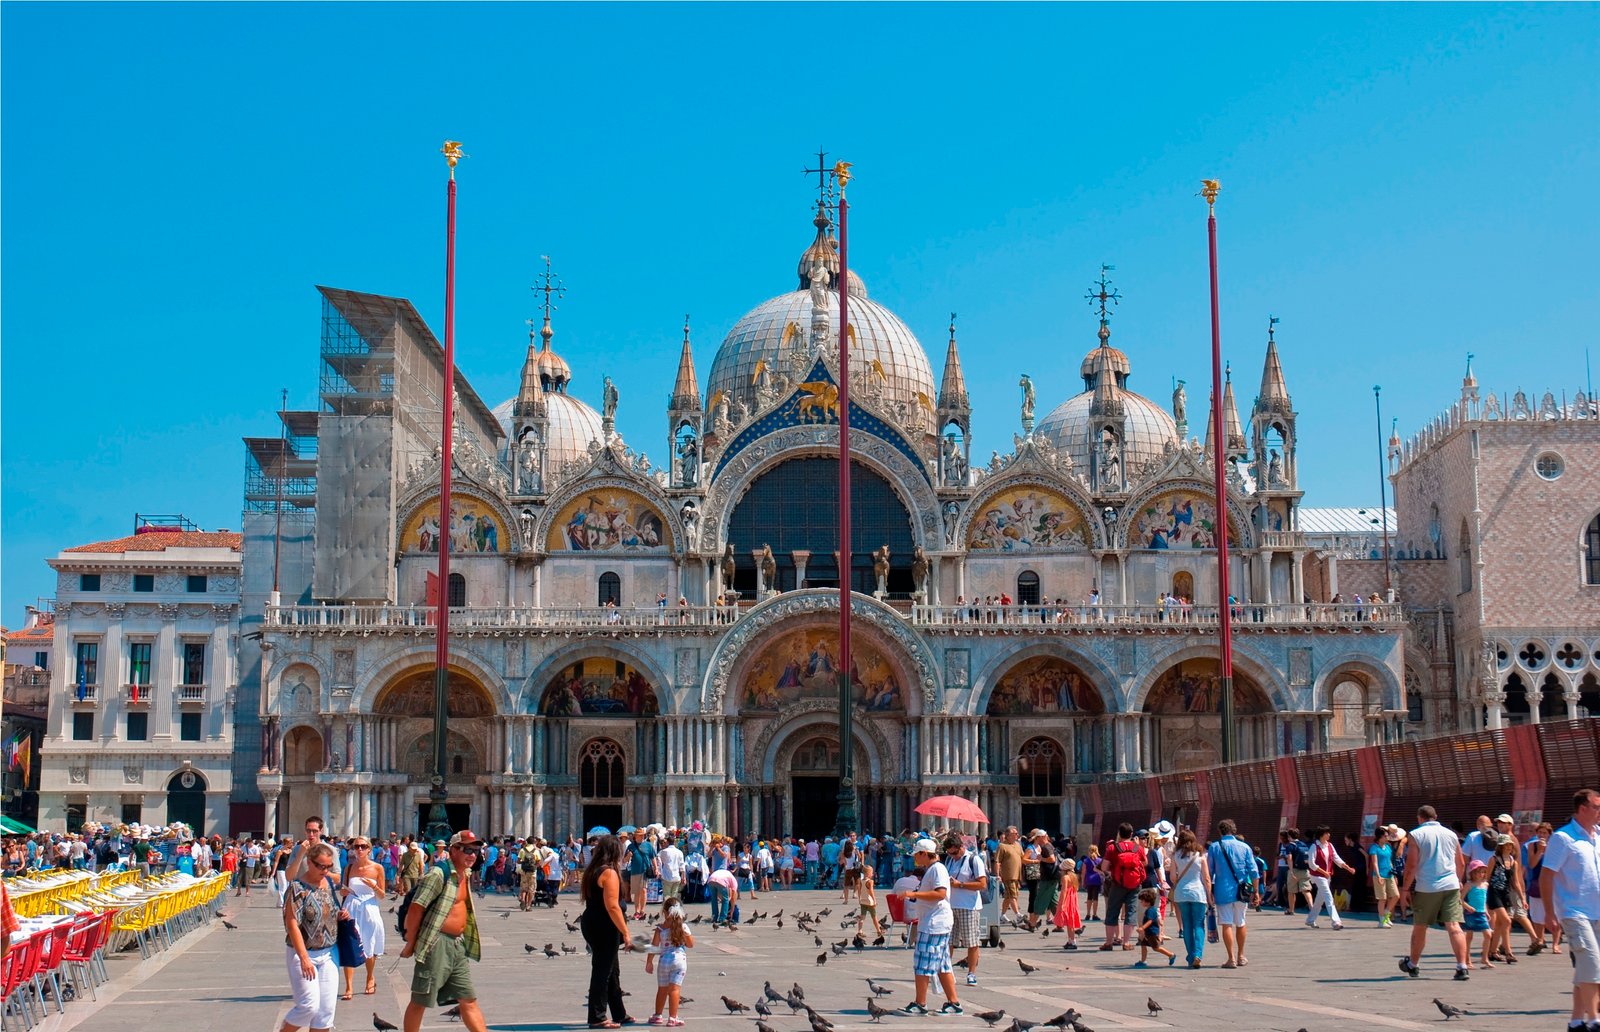 St Mark's Basilica, The Exotic Landmark in Venice